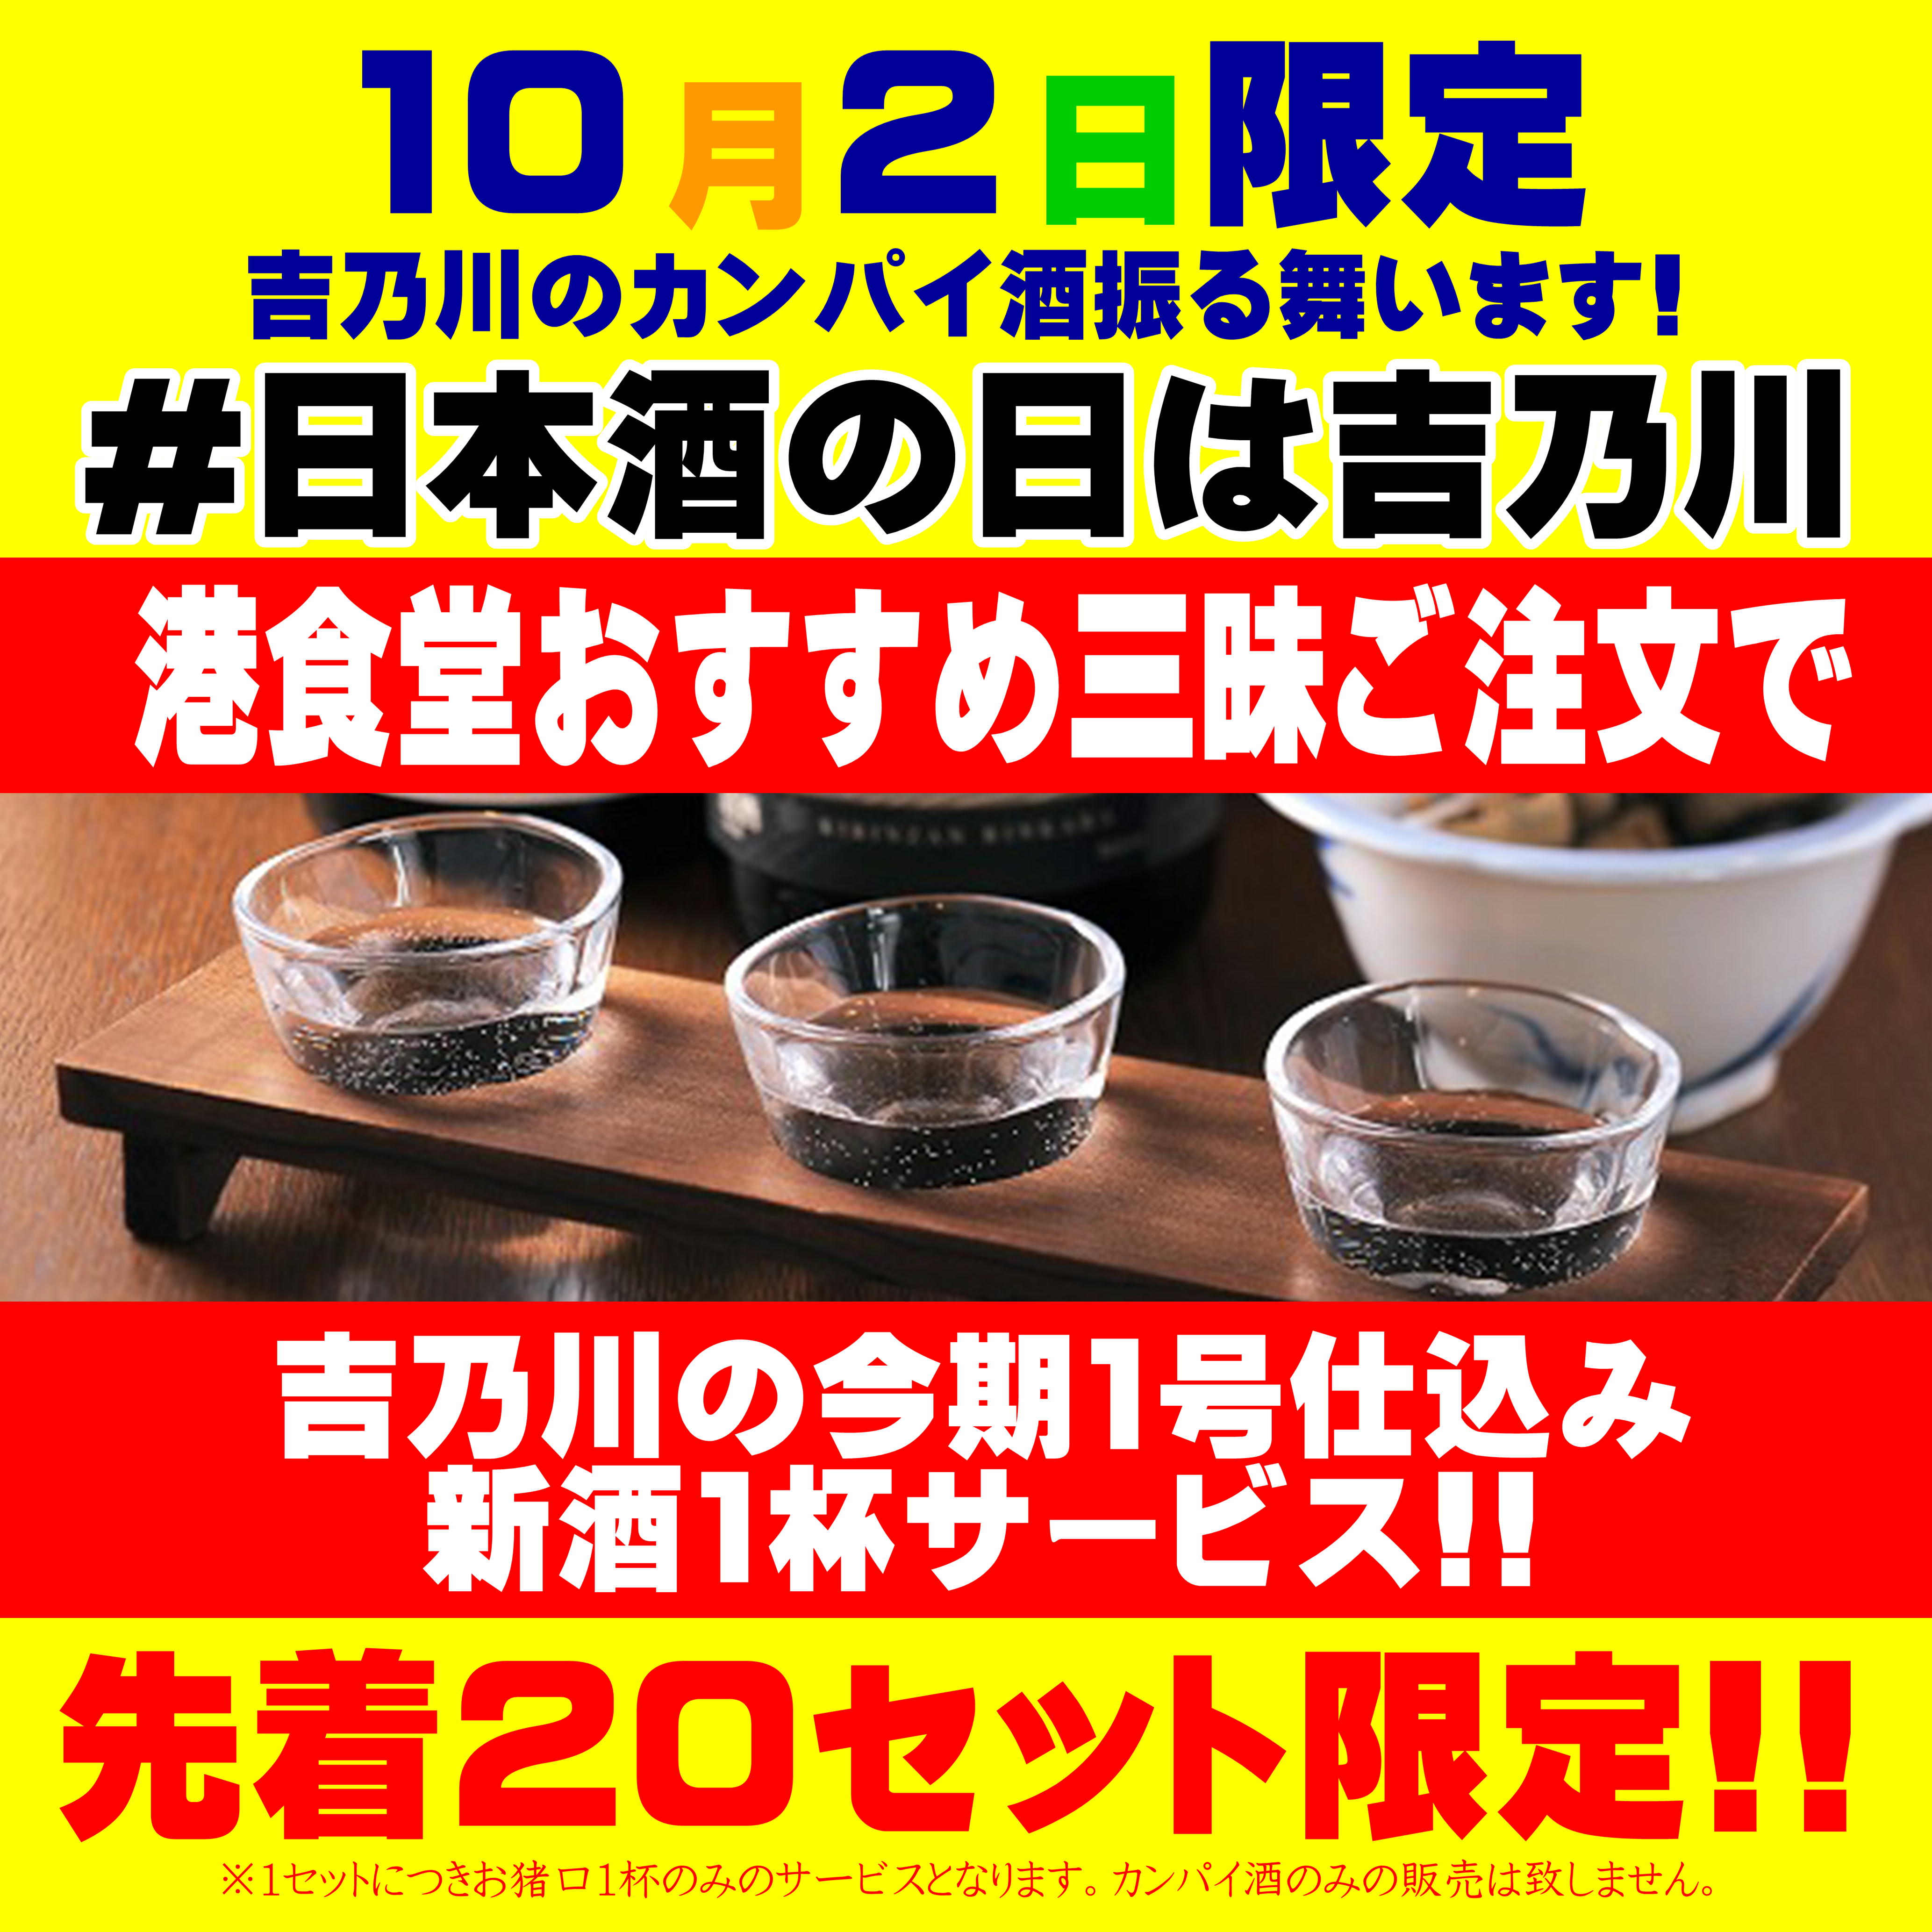 10月2日限定!!吉乃川の今期1号仕込みの新酒を乾杯酒として振る舞います